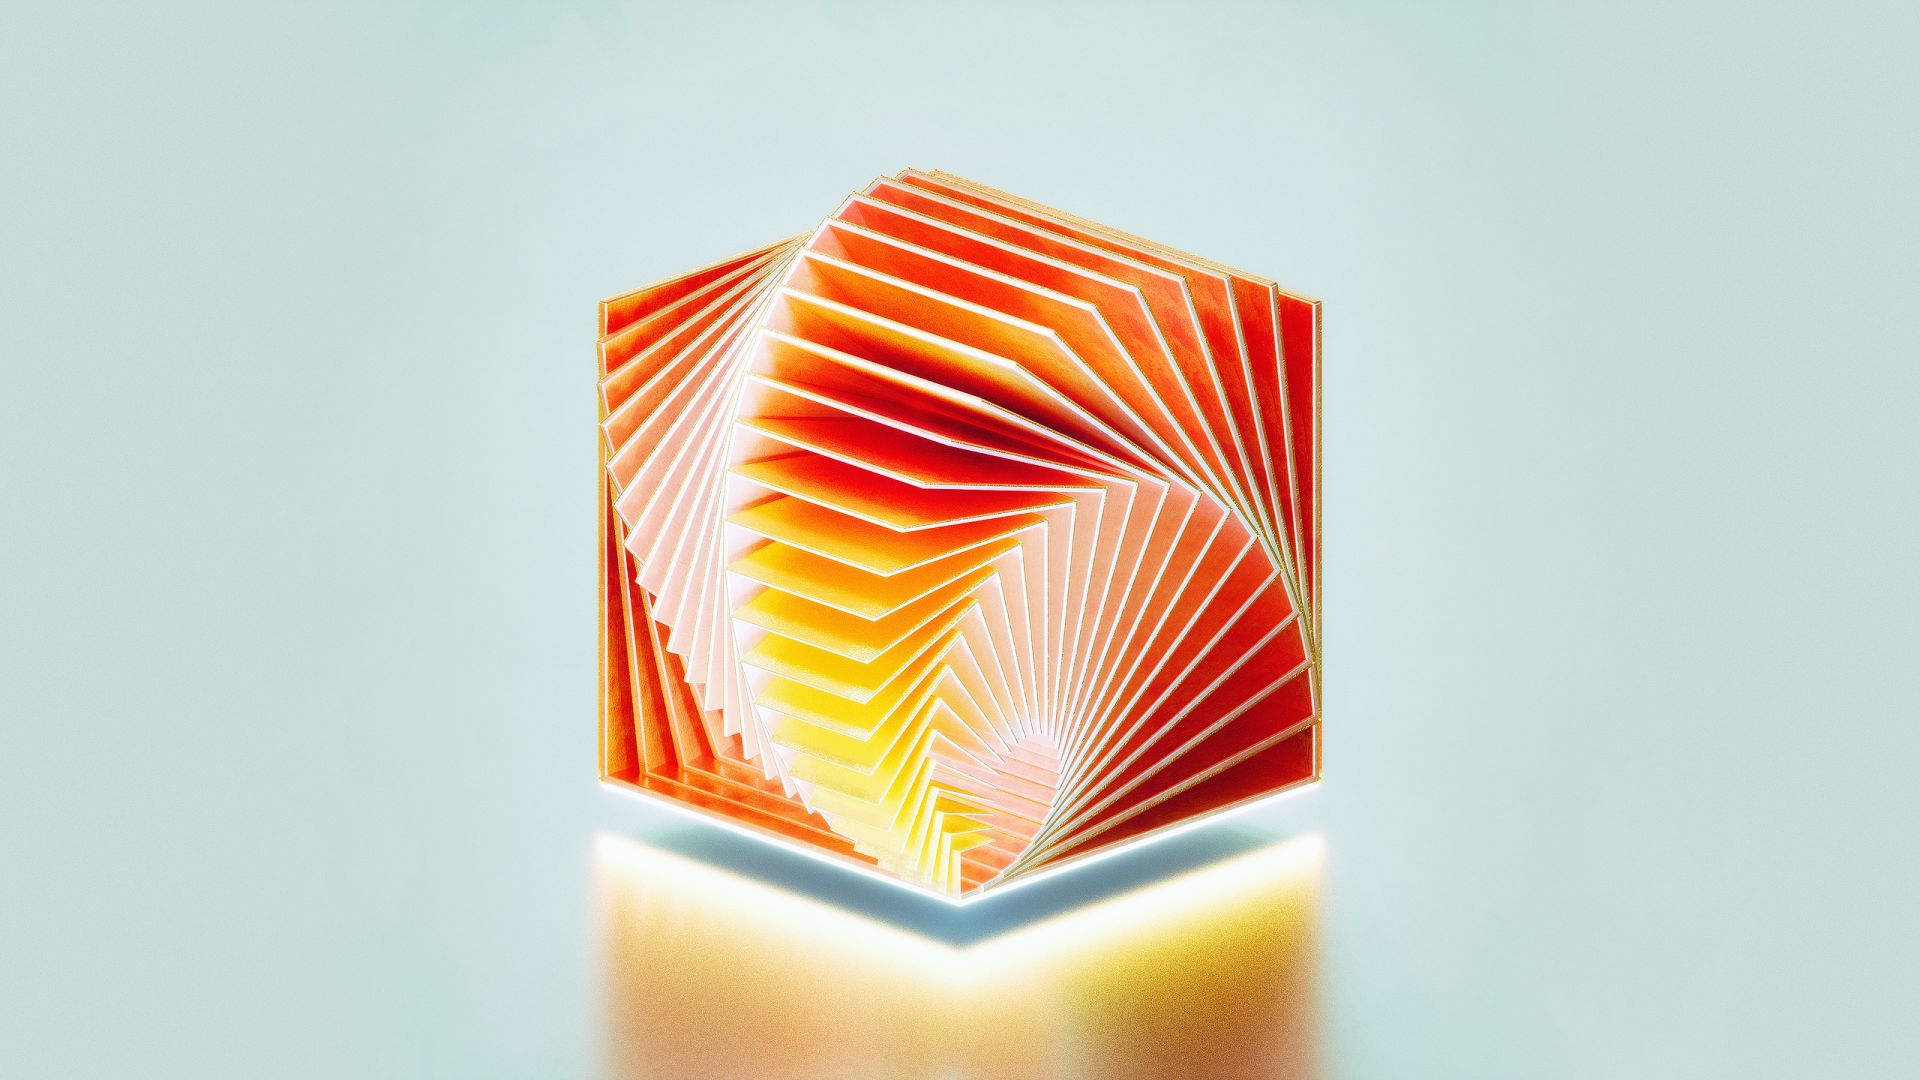 куб, HD, 3D, Medaltations, cube, abstract (horizontal)